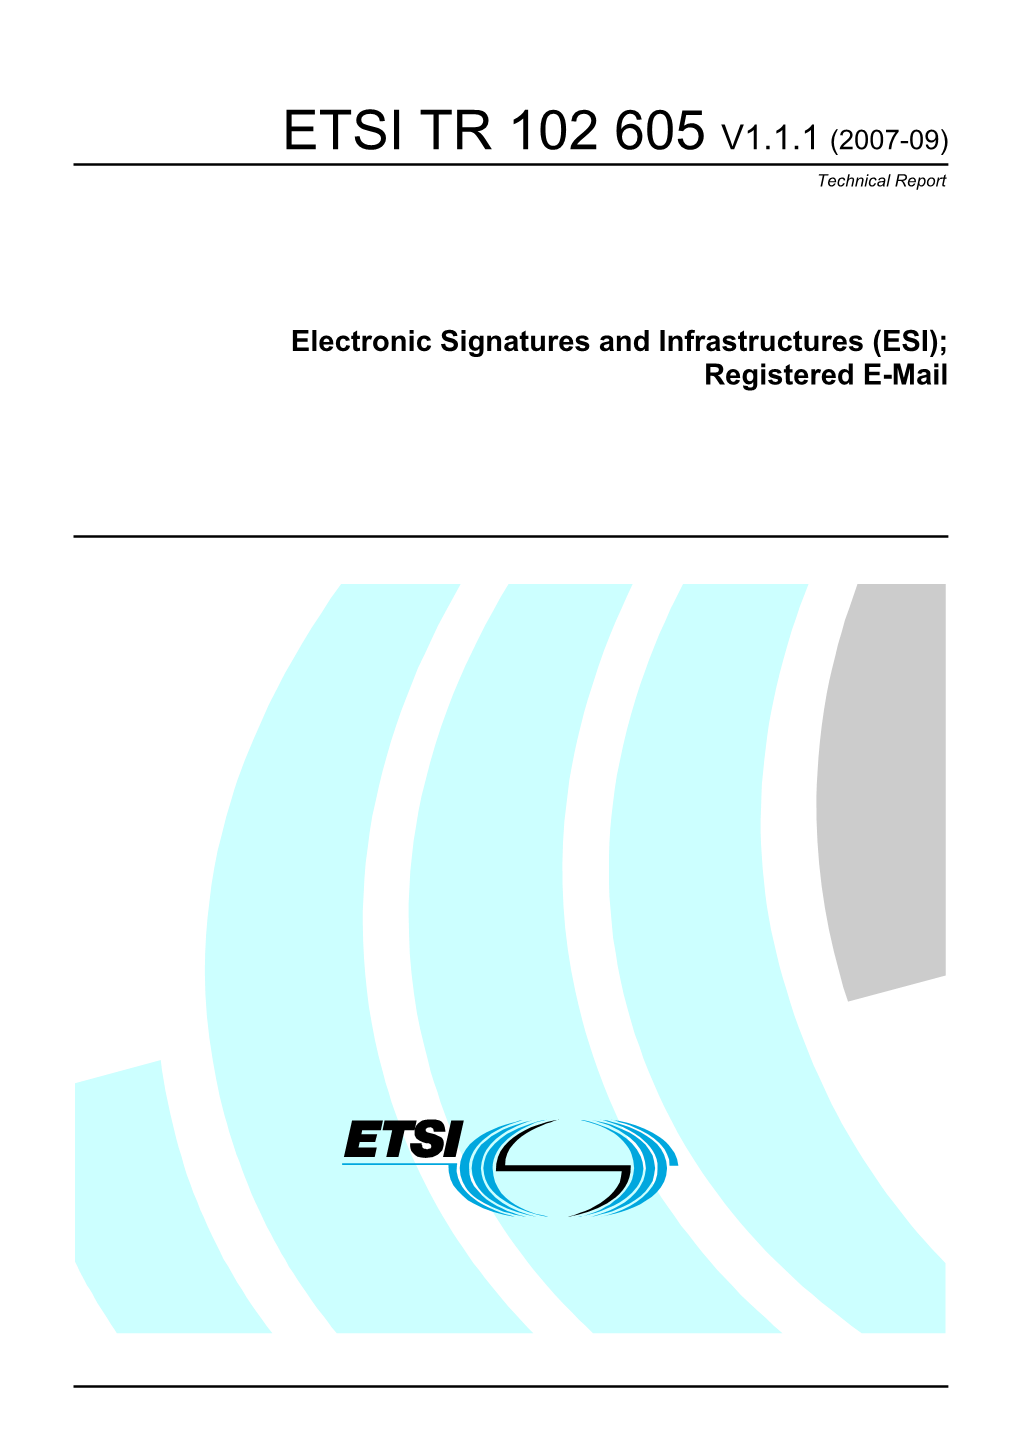 ETSI TR 102 605 V1.1.1 (2007-09) Technical Report